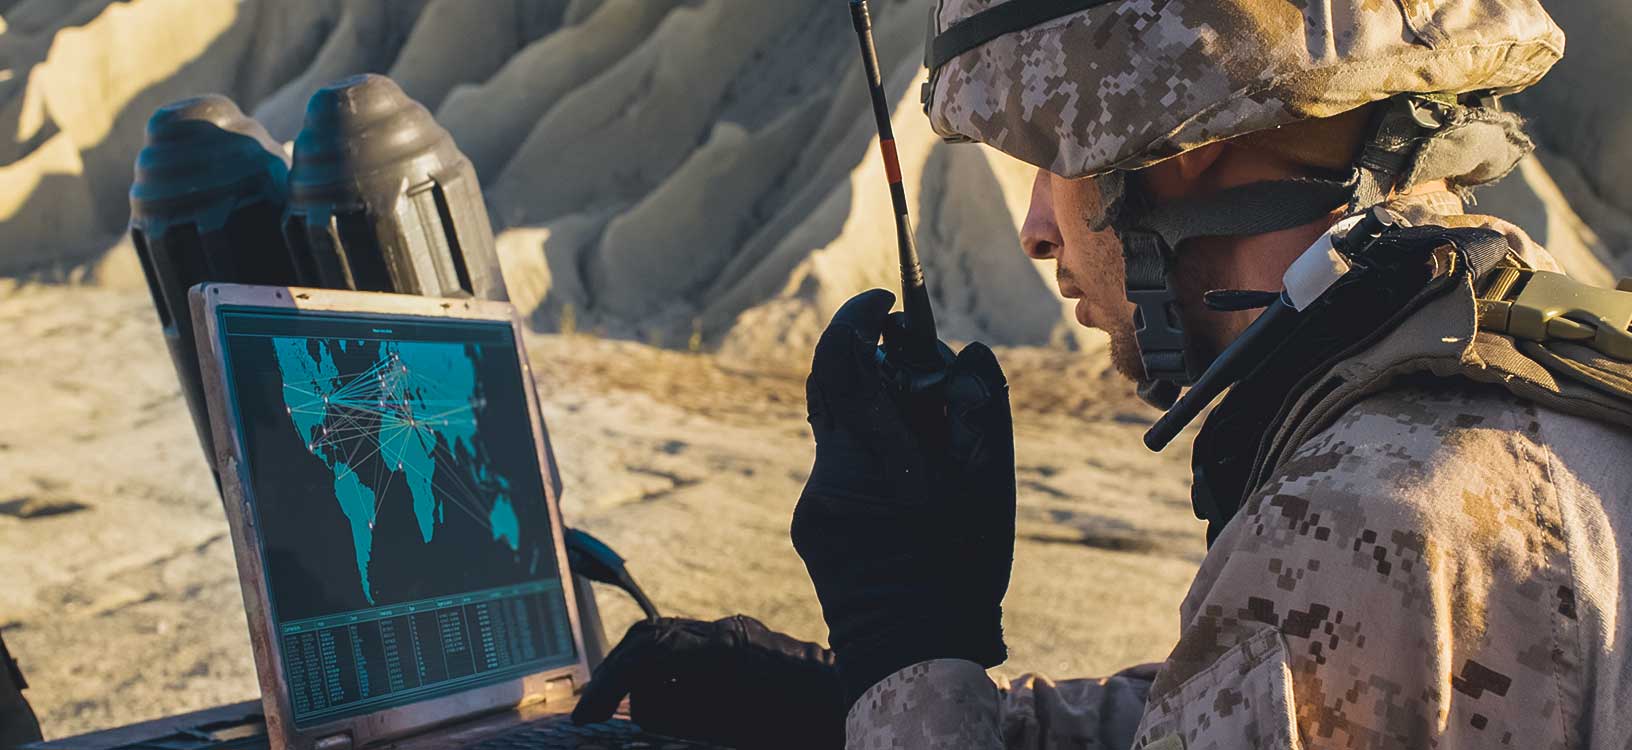 砂漠での軍事作戦中に通信のためにラップトップコンピューターと無線を使用している兵士